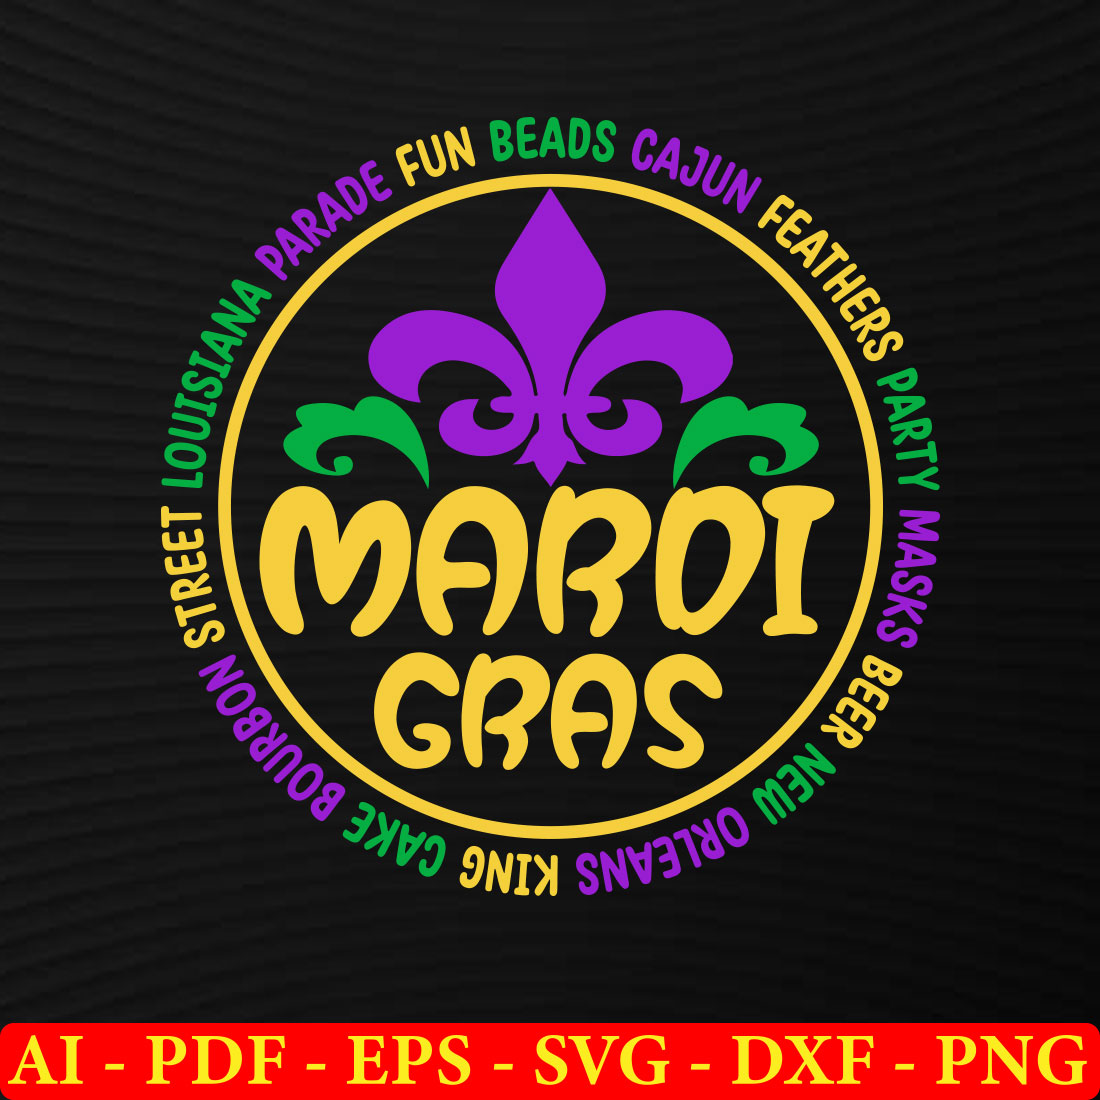 6 Mardi Gras T-shirt SVG Bundle Vol-03 preview image.